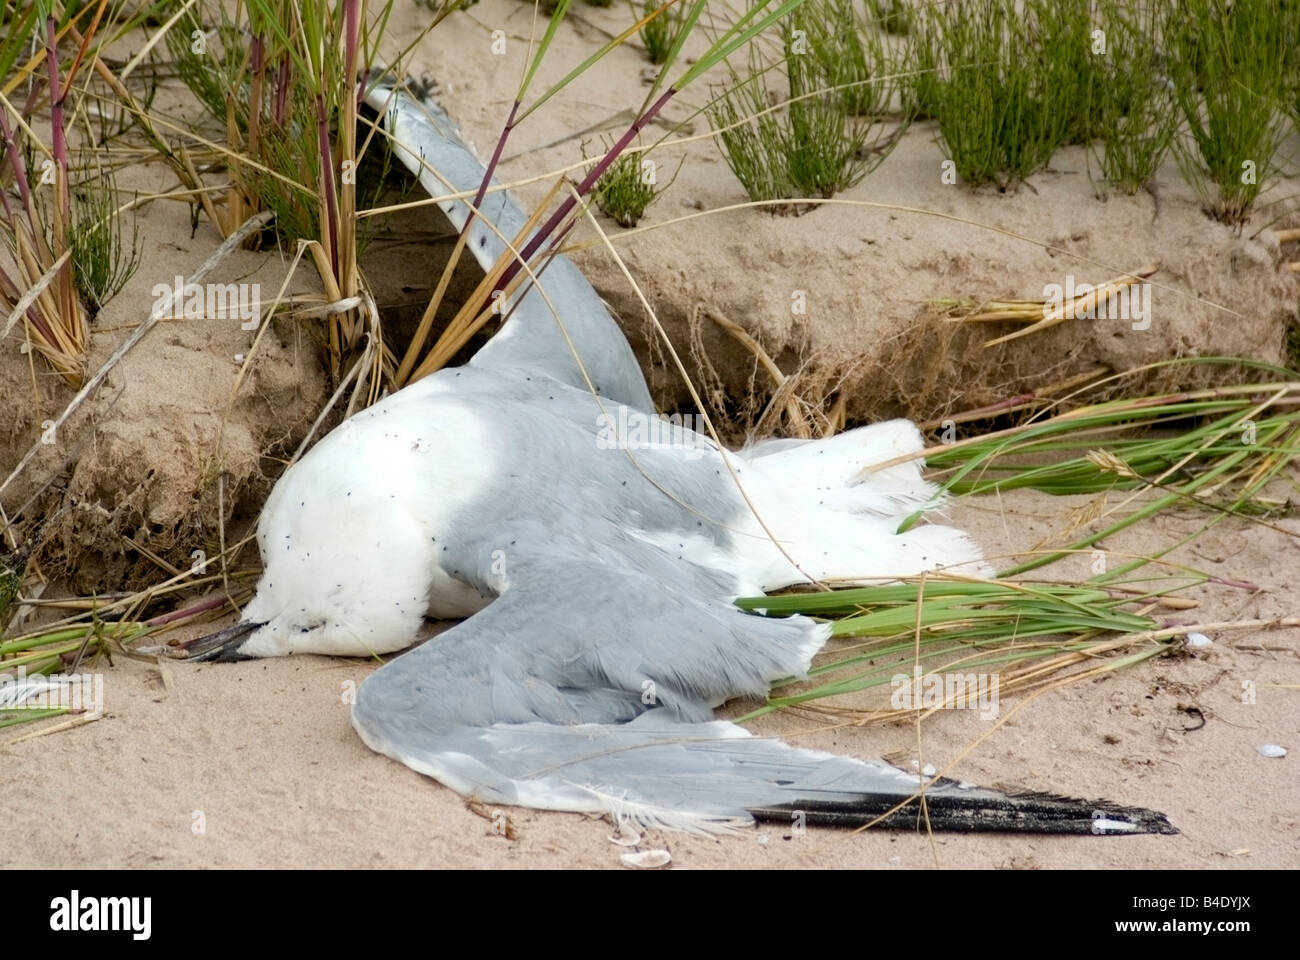 Dead gull on sandy beach Stock Photo